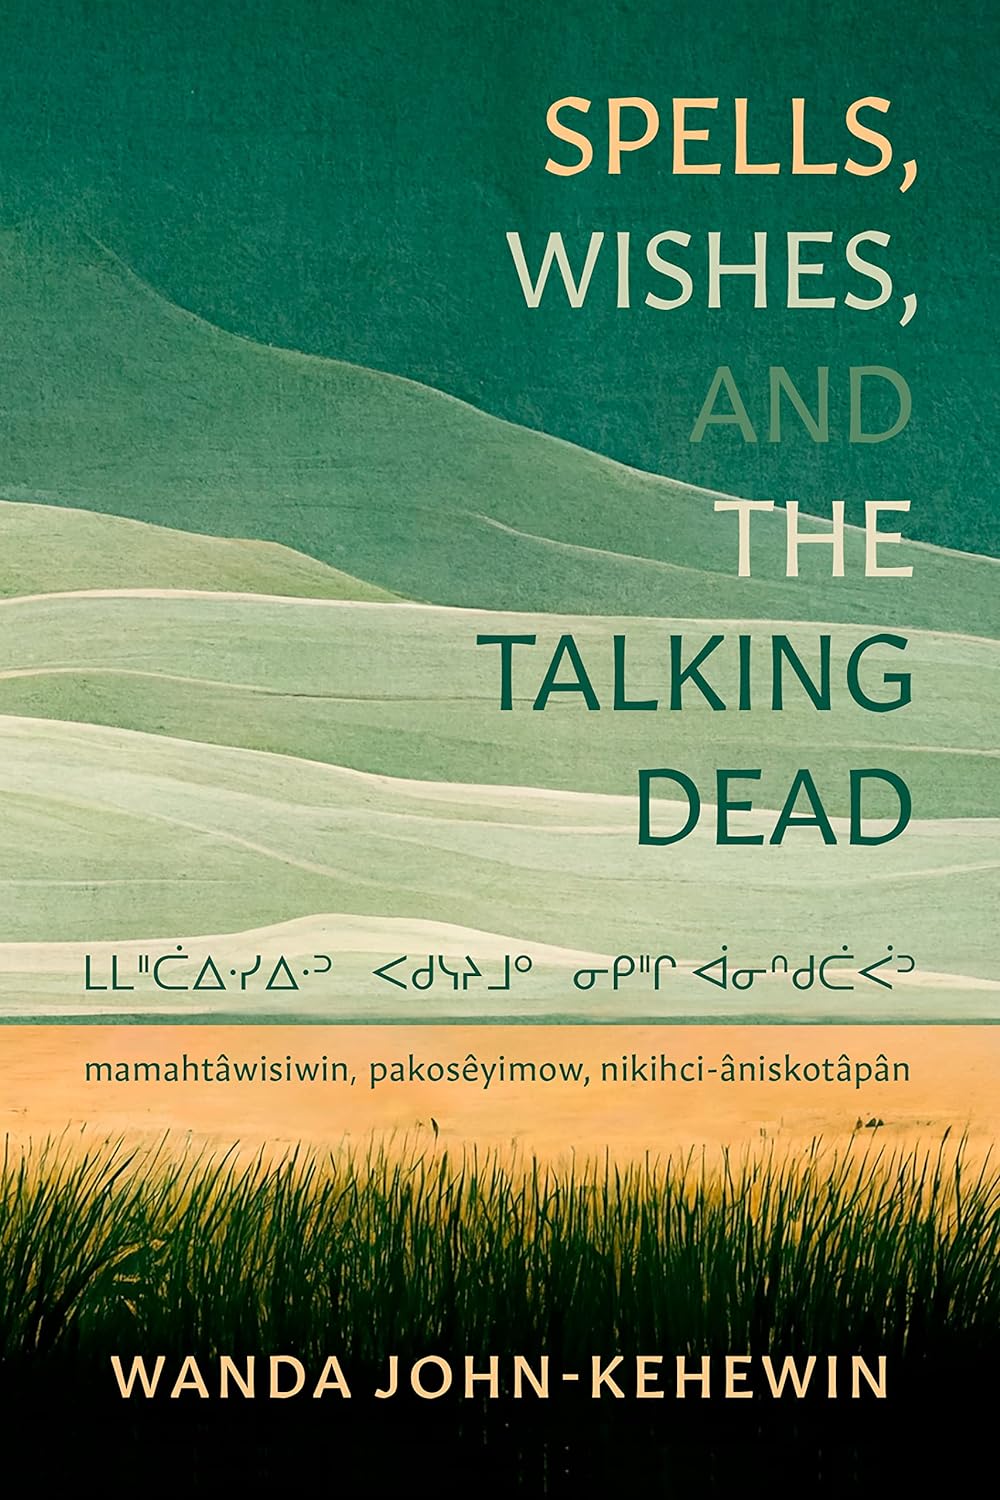 Spells, Wishes, and the Talking Dead: ᒪᒪᐦᑖᐃᐧᓯᐃᐧᐣ ᐸᑯᓭᔨᒧᐤ ᓂᑭᐦᒋ ᐋᓂᐢᑯᑖᐹᐣ mamahtâwisiwin, pakosêyimow, nikihci-âniskotâpân by Wanda John-Kehewin